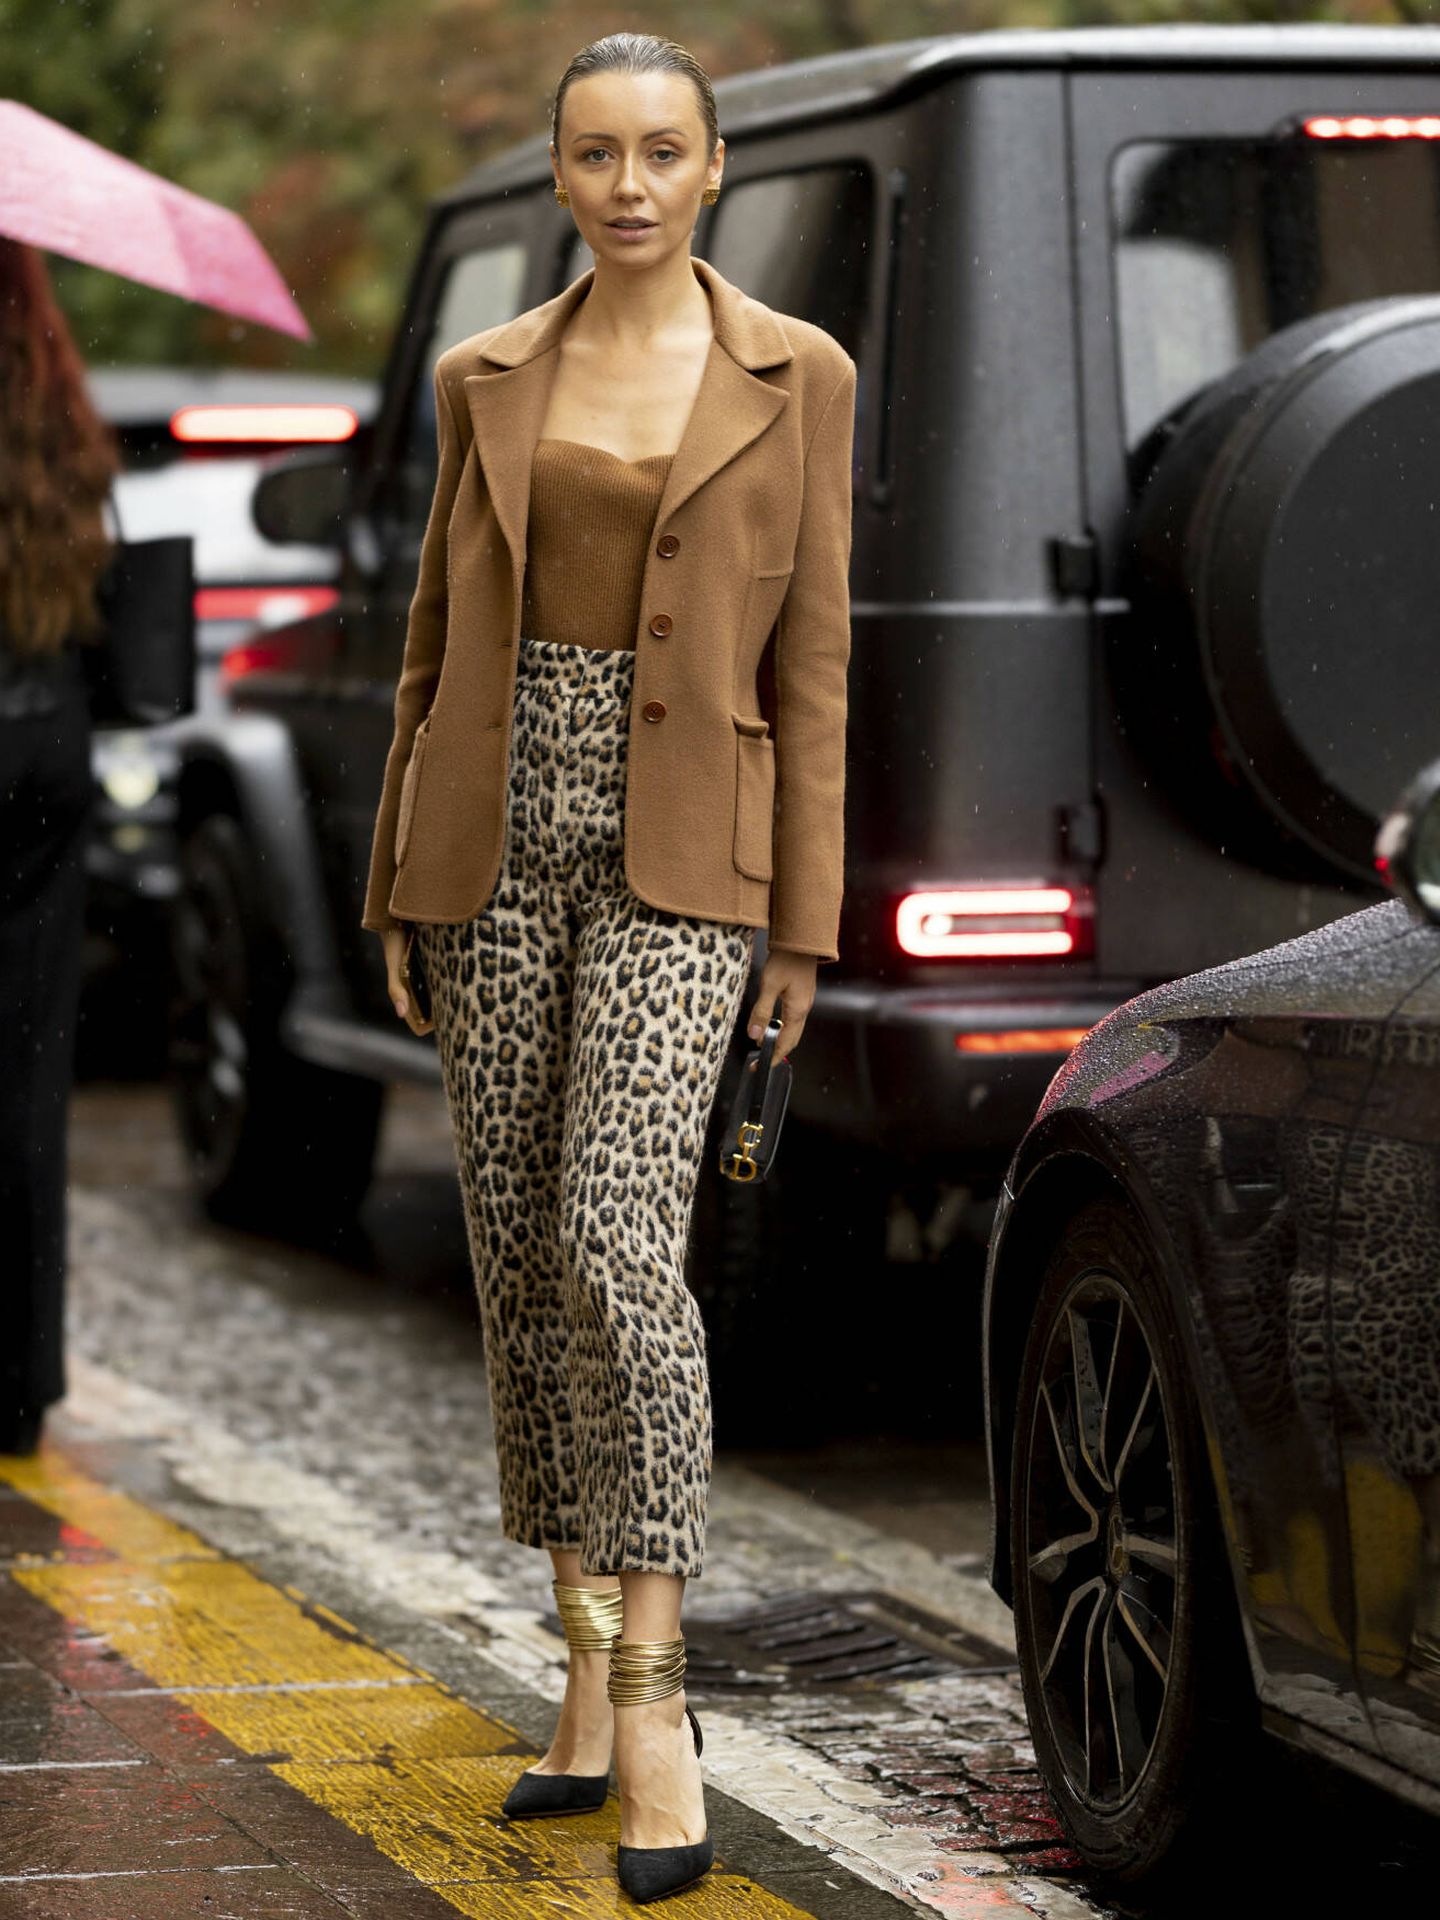 Una mujer con un vestido estampado de leopardo y un abrigo que dice leopardo.